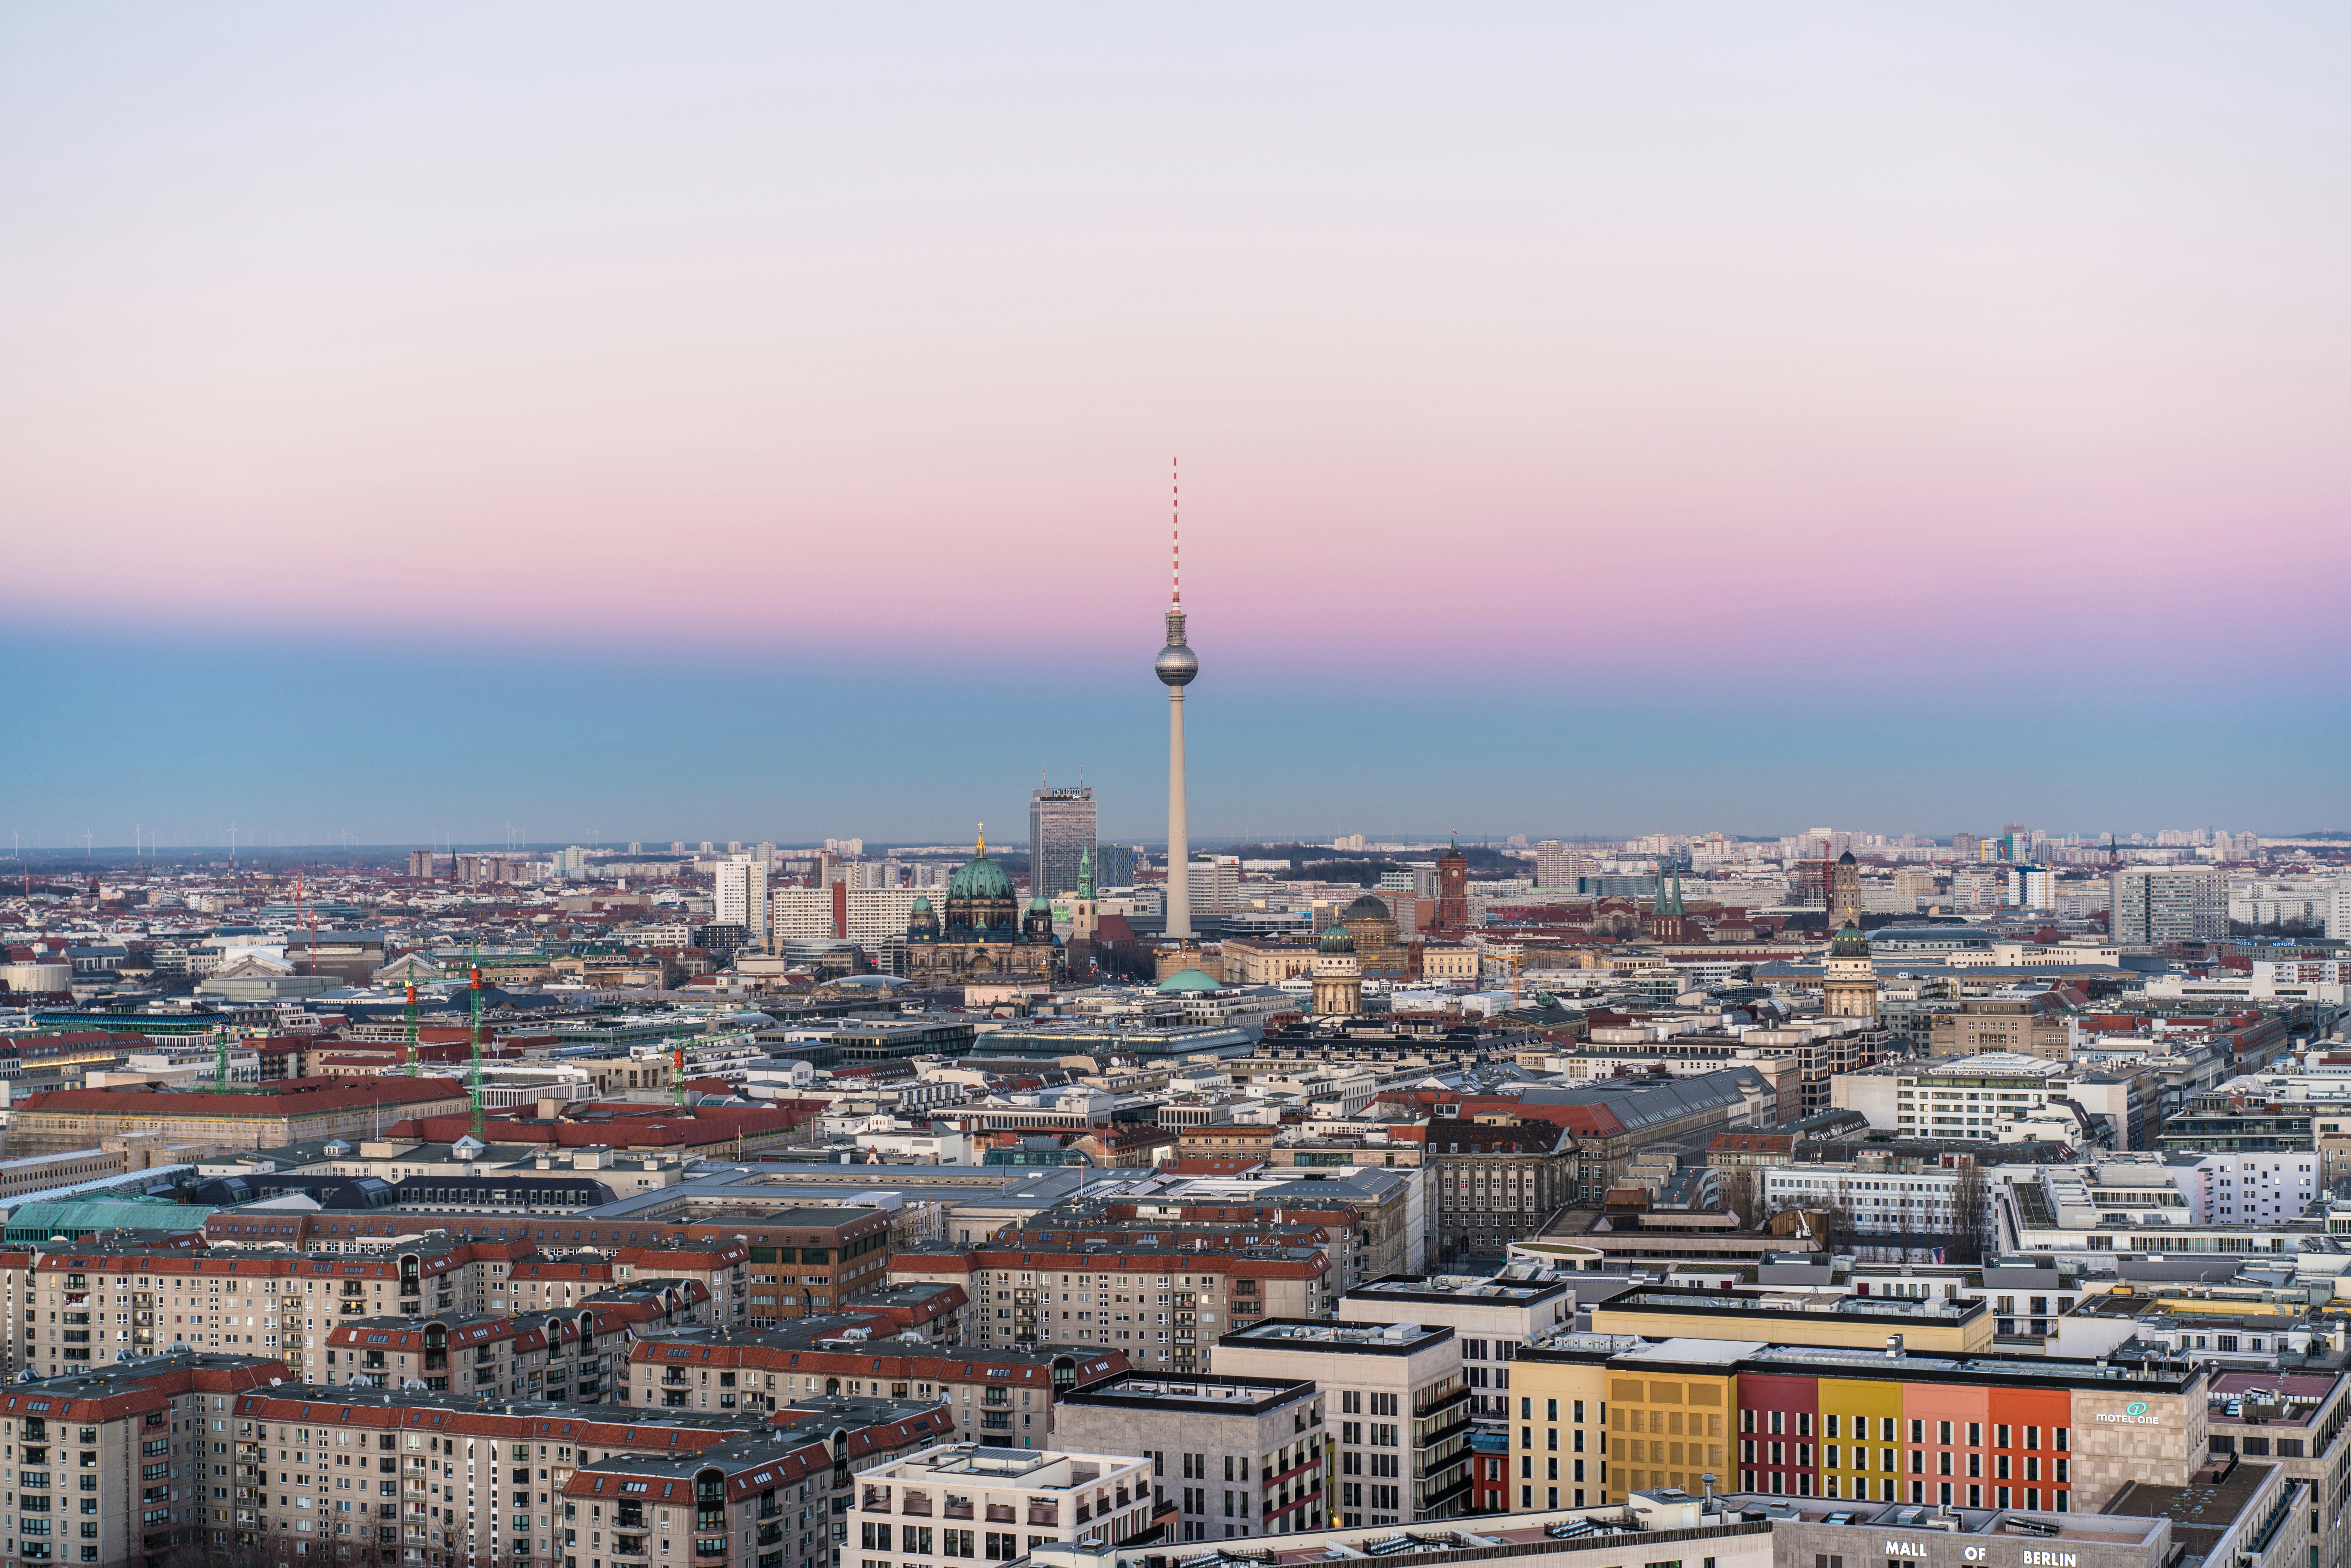 Luftbild-Panorama er Stadt berlin, im Mittelpunkt der Fernsehturm, im Hintergrund leicht dunstiger, blau-rosafarbener Himmel.